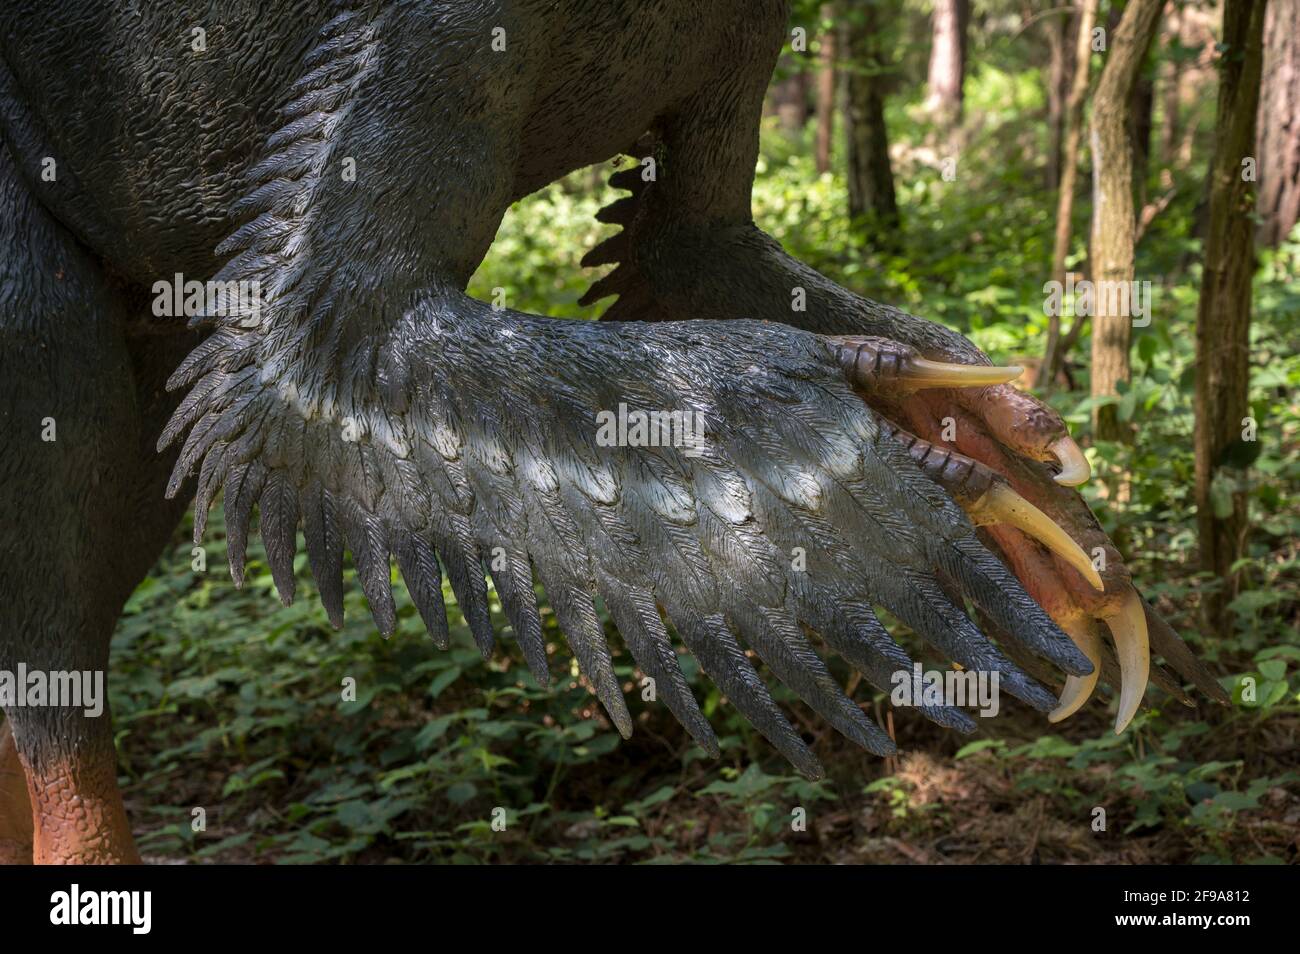 Dinosaurio Utahrraptor (similar al Velociraptor) como modelo en Dinopark Münchehagen cerca de Hanover. Tenía unos 7 m de largo, pesaba 500 kg y vivía hace unos 130 millones de años (Cretácico) en América del Norte. Es muy probable que tuviera un plumaje. La larga garra de la hoz en el pie trasero es típica de dinosaurios depredadores como el Utahraptor. Foto de stock